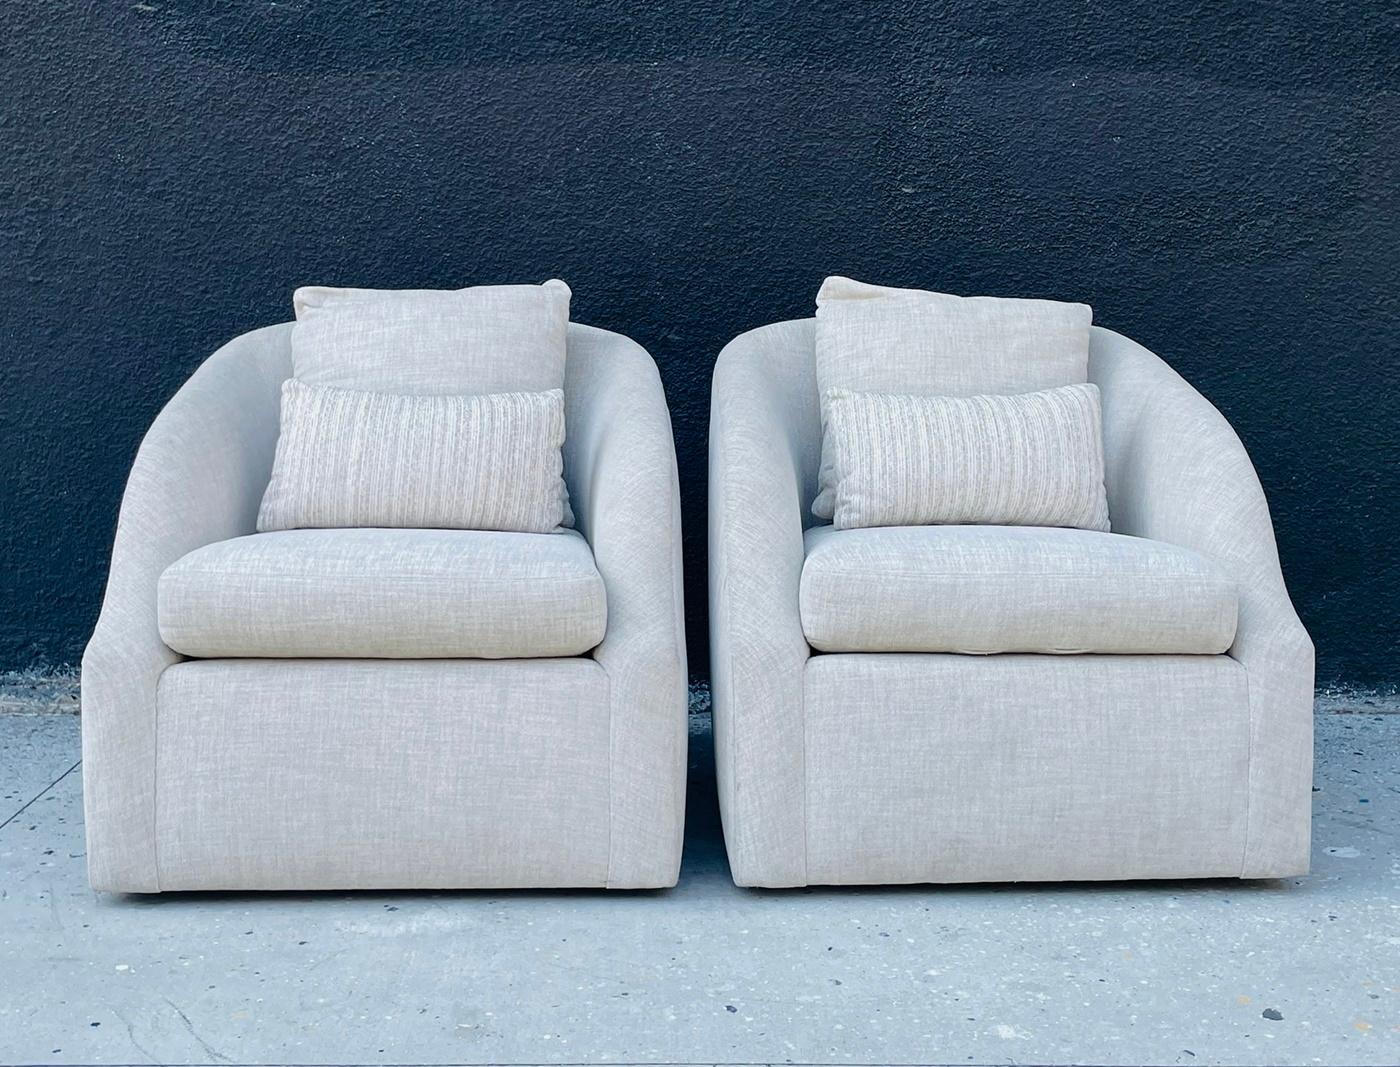 Ajoutez une touche de sophistication moderne à votre espace de vie avec cette exquise paire de fauteuils post-modernes à base pivotante, fabriqués aux États-Unis dans les années 1990. Ces chaises élégantes et raffinées présentent un design unique